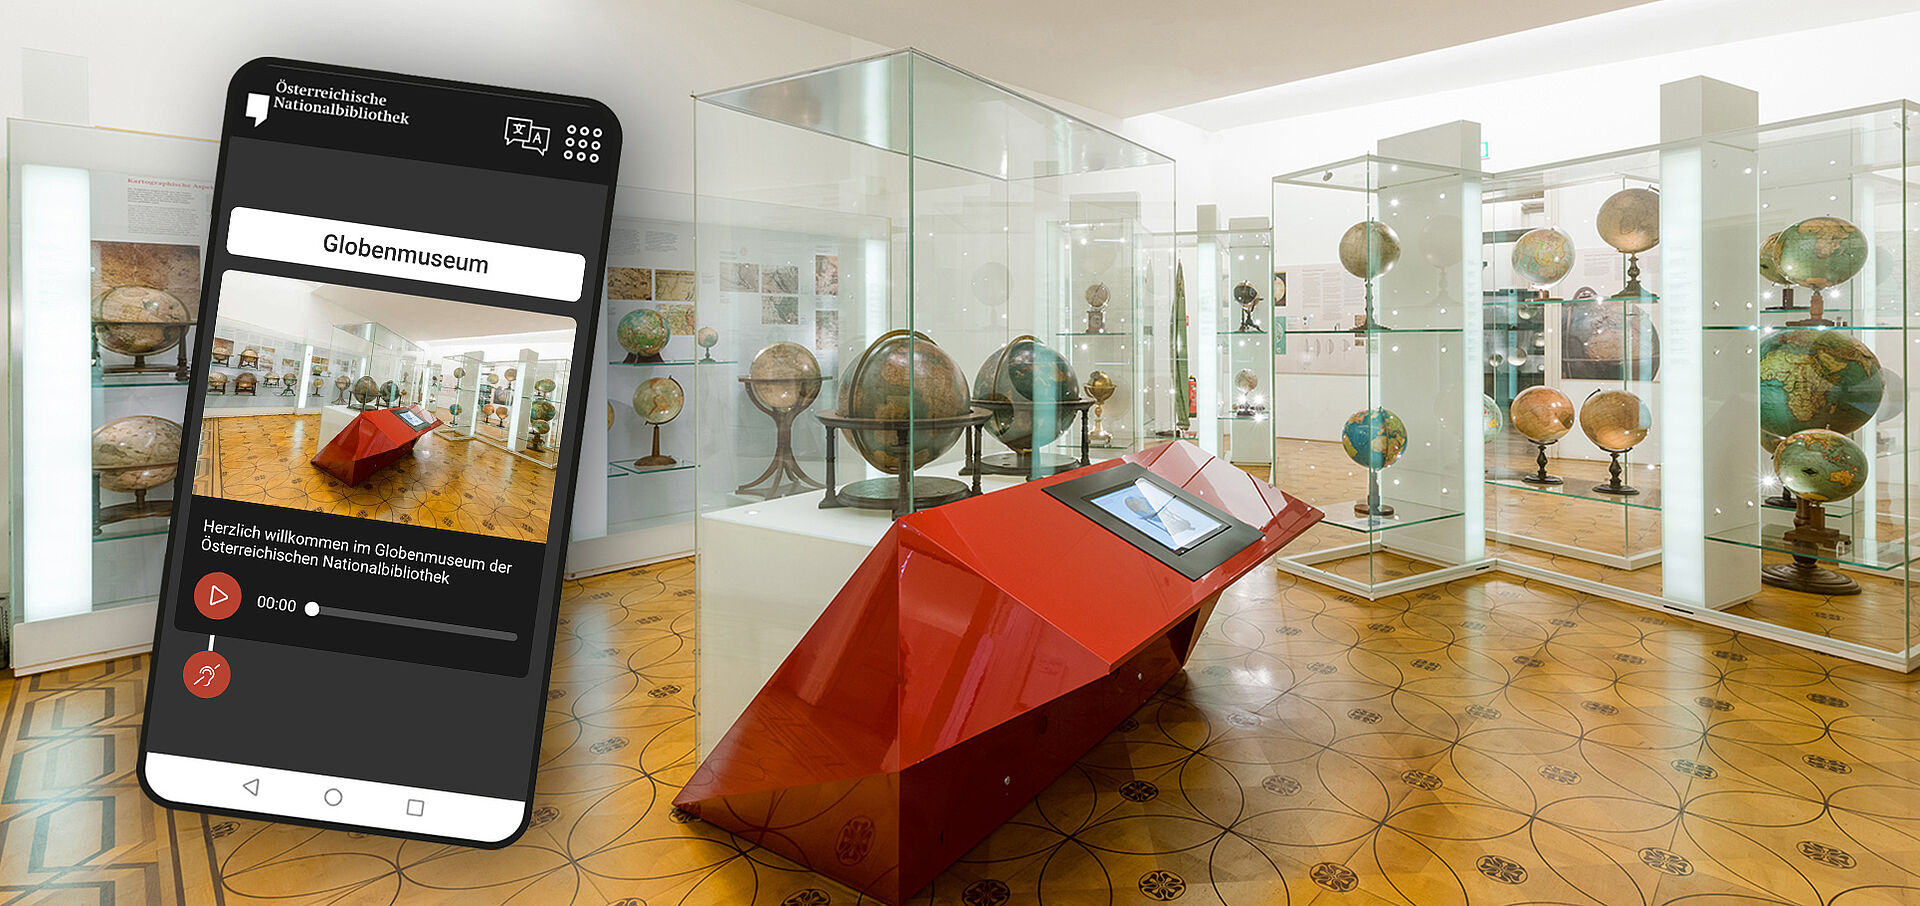 Foto von einem Smartphone in einem Museumsraum mit Globen